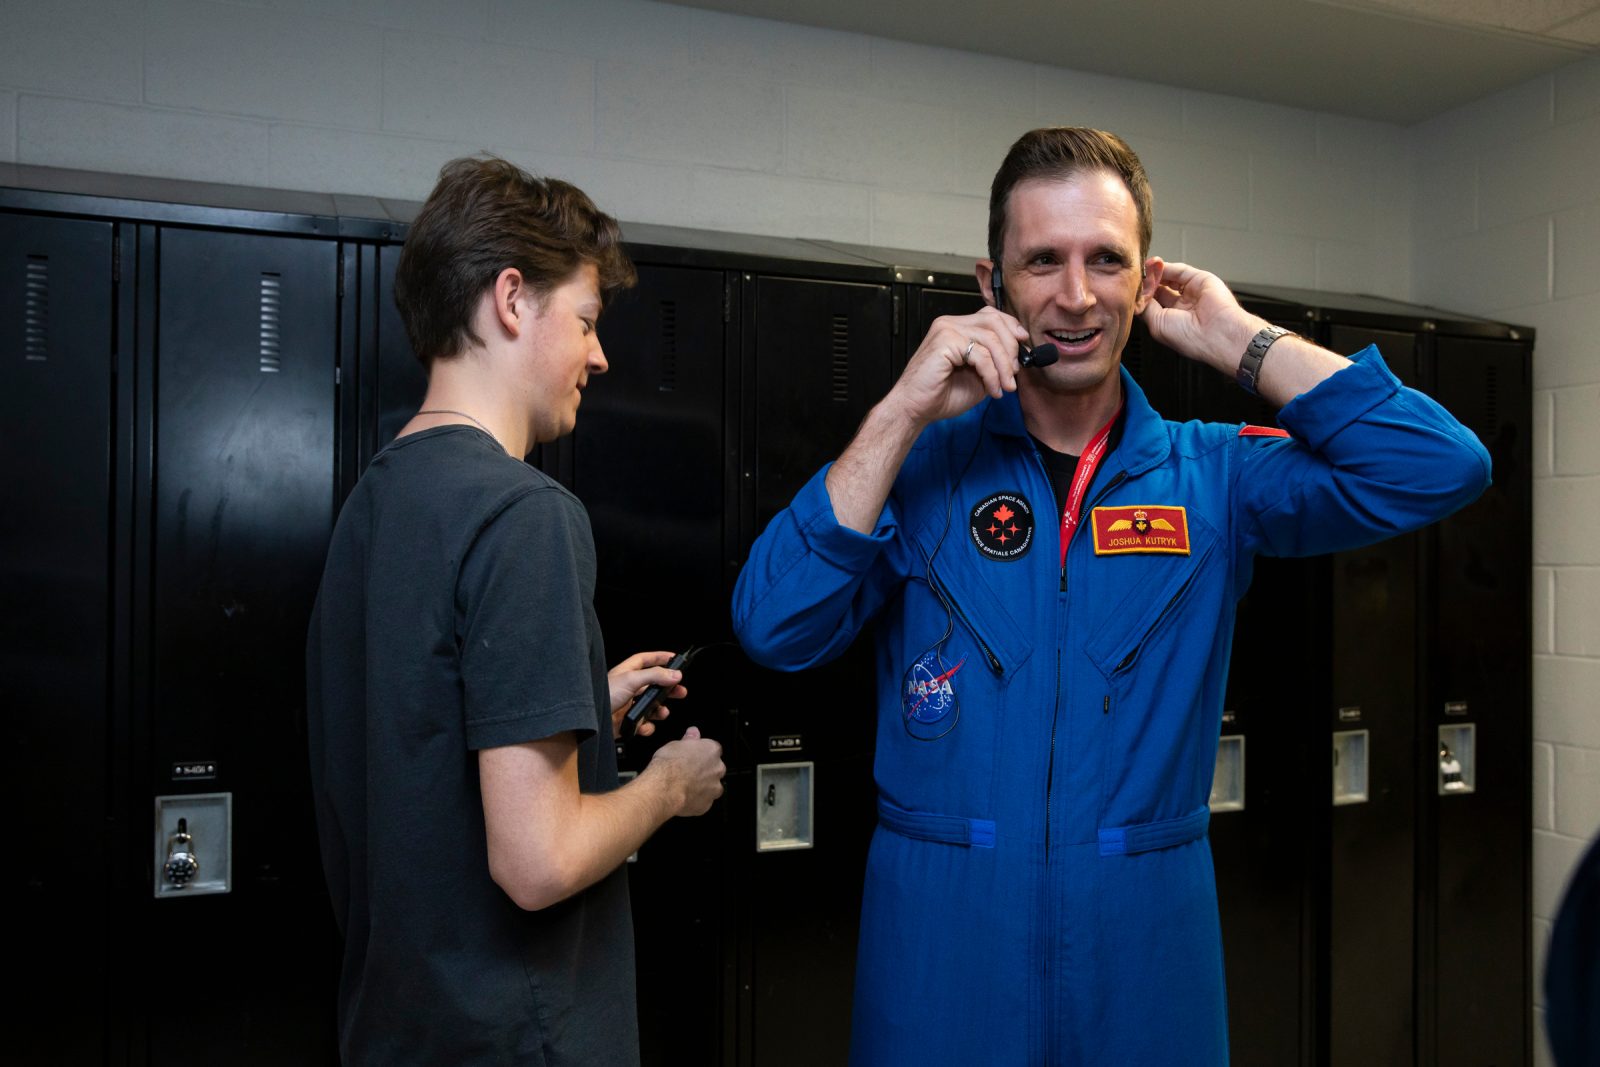 L’école St-Johns accueille l’astronaute Joshua Kutryck